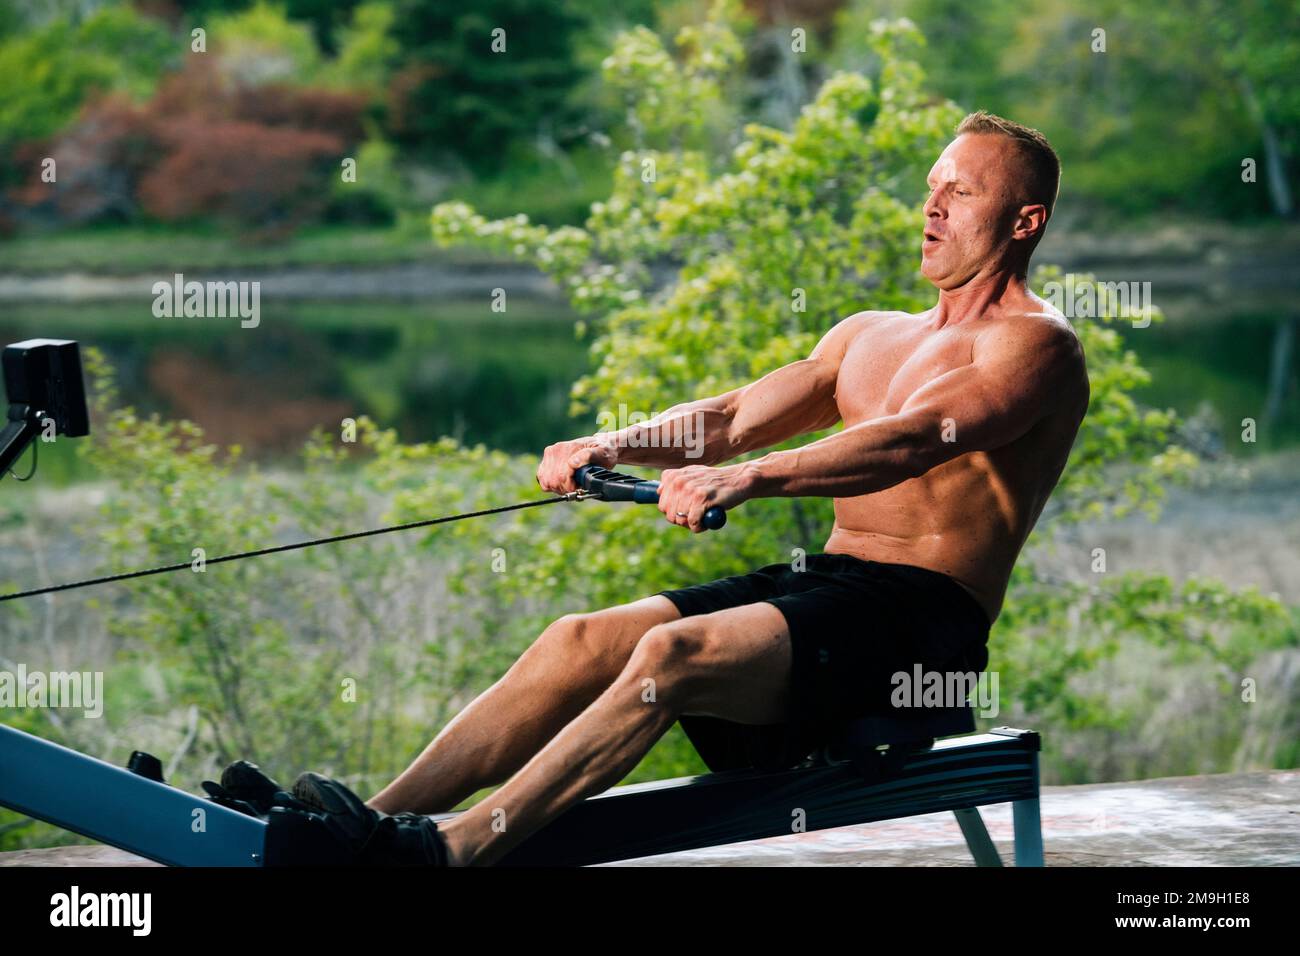 Man exercising on rowing machine outdoors, Bainbridge Island, Washington, USA Stock Photo